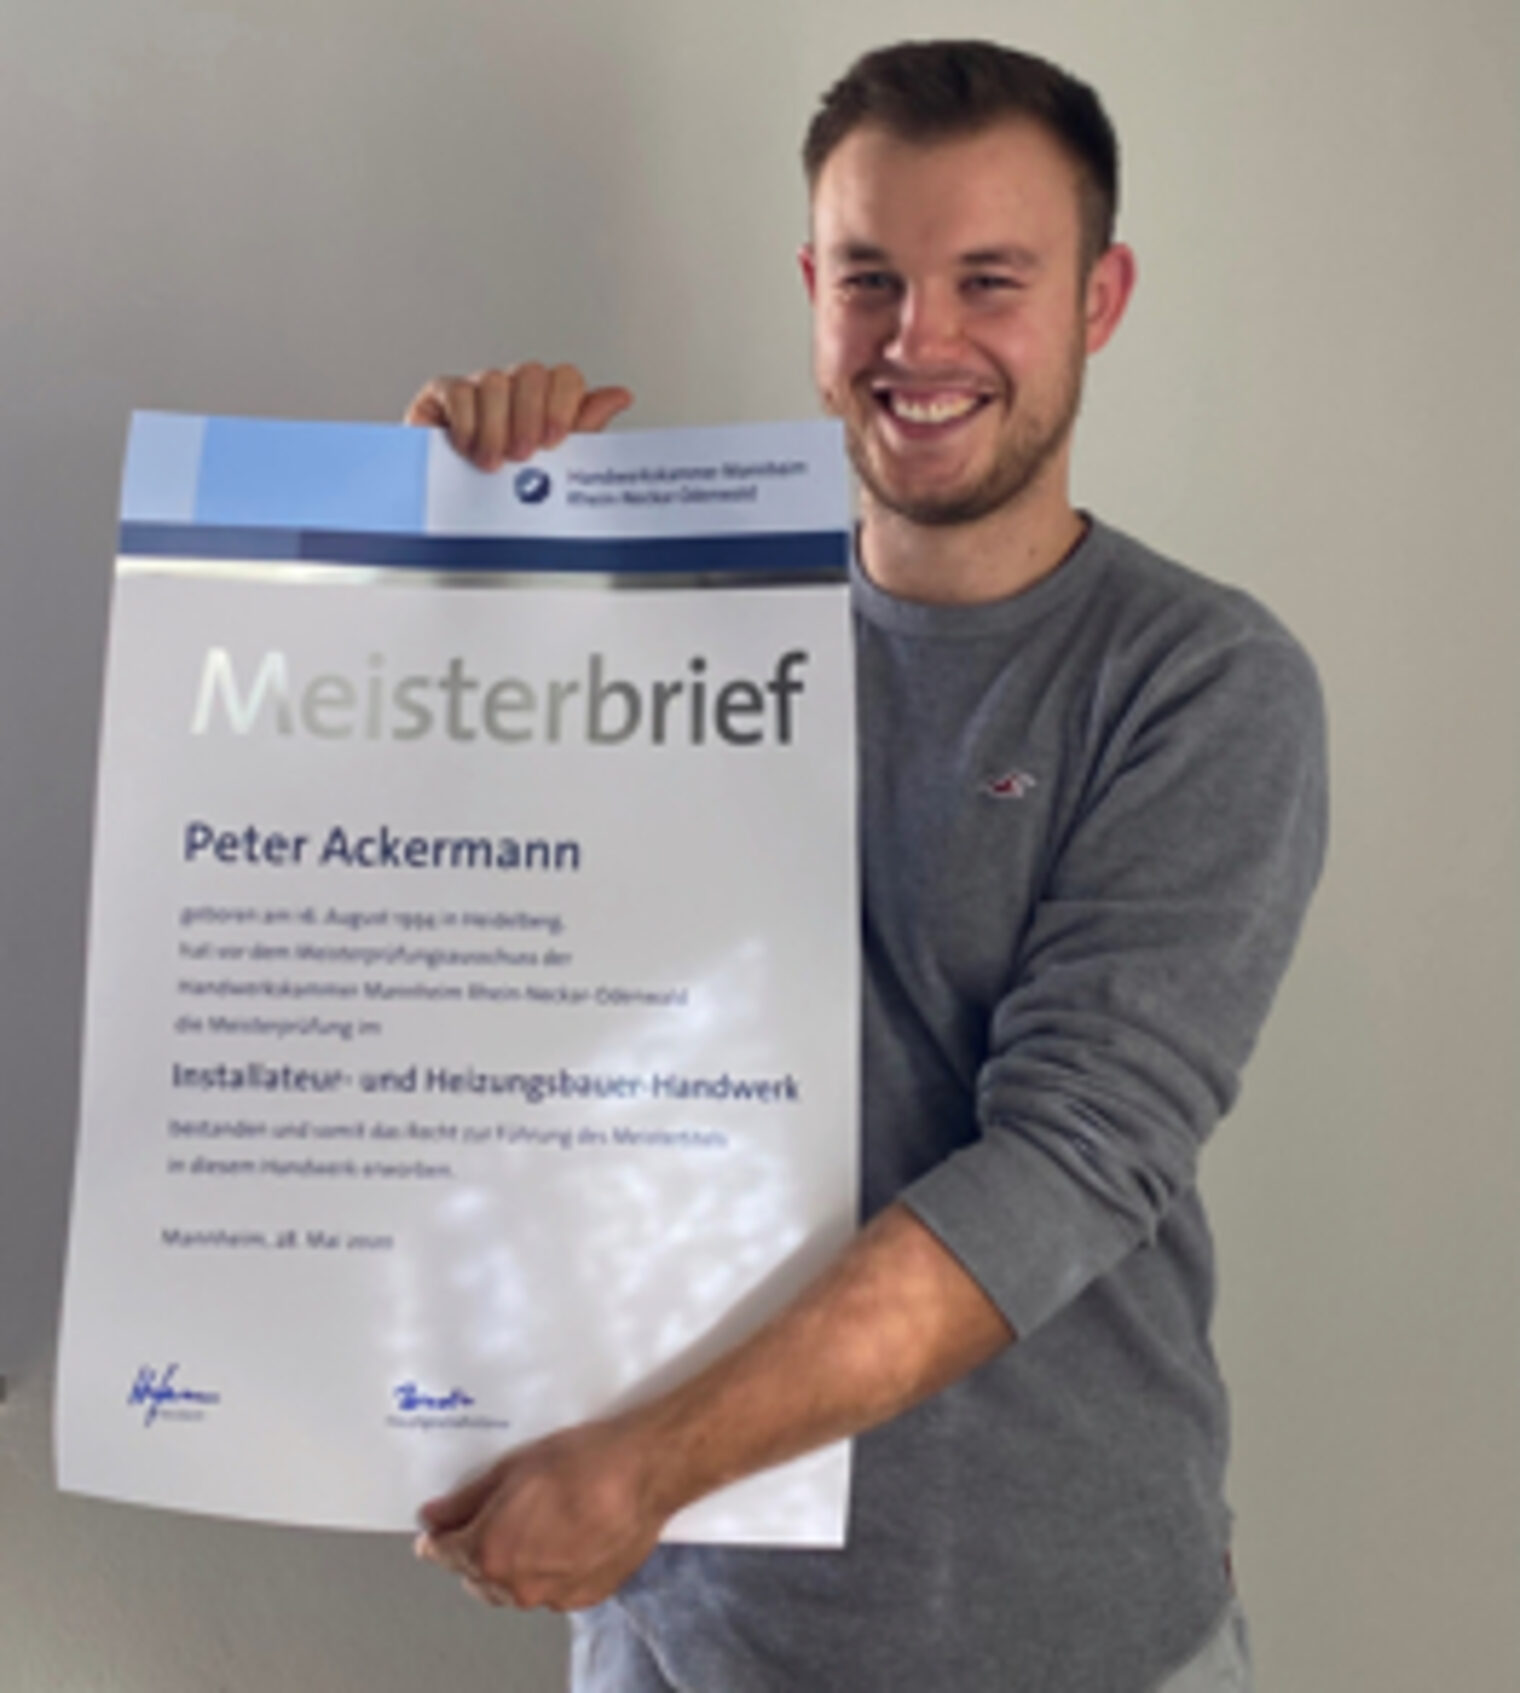 Installateur- und Heizungsbauermeister - Ackermann, Peter